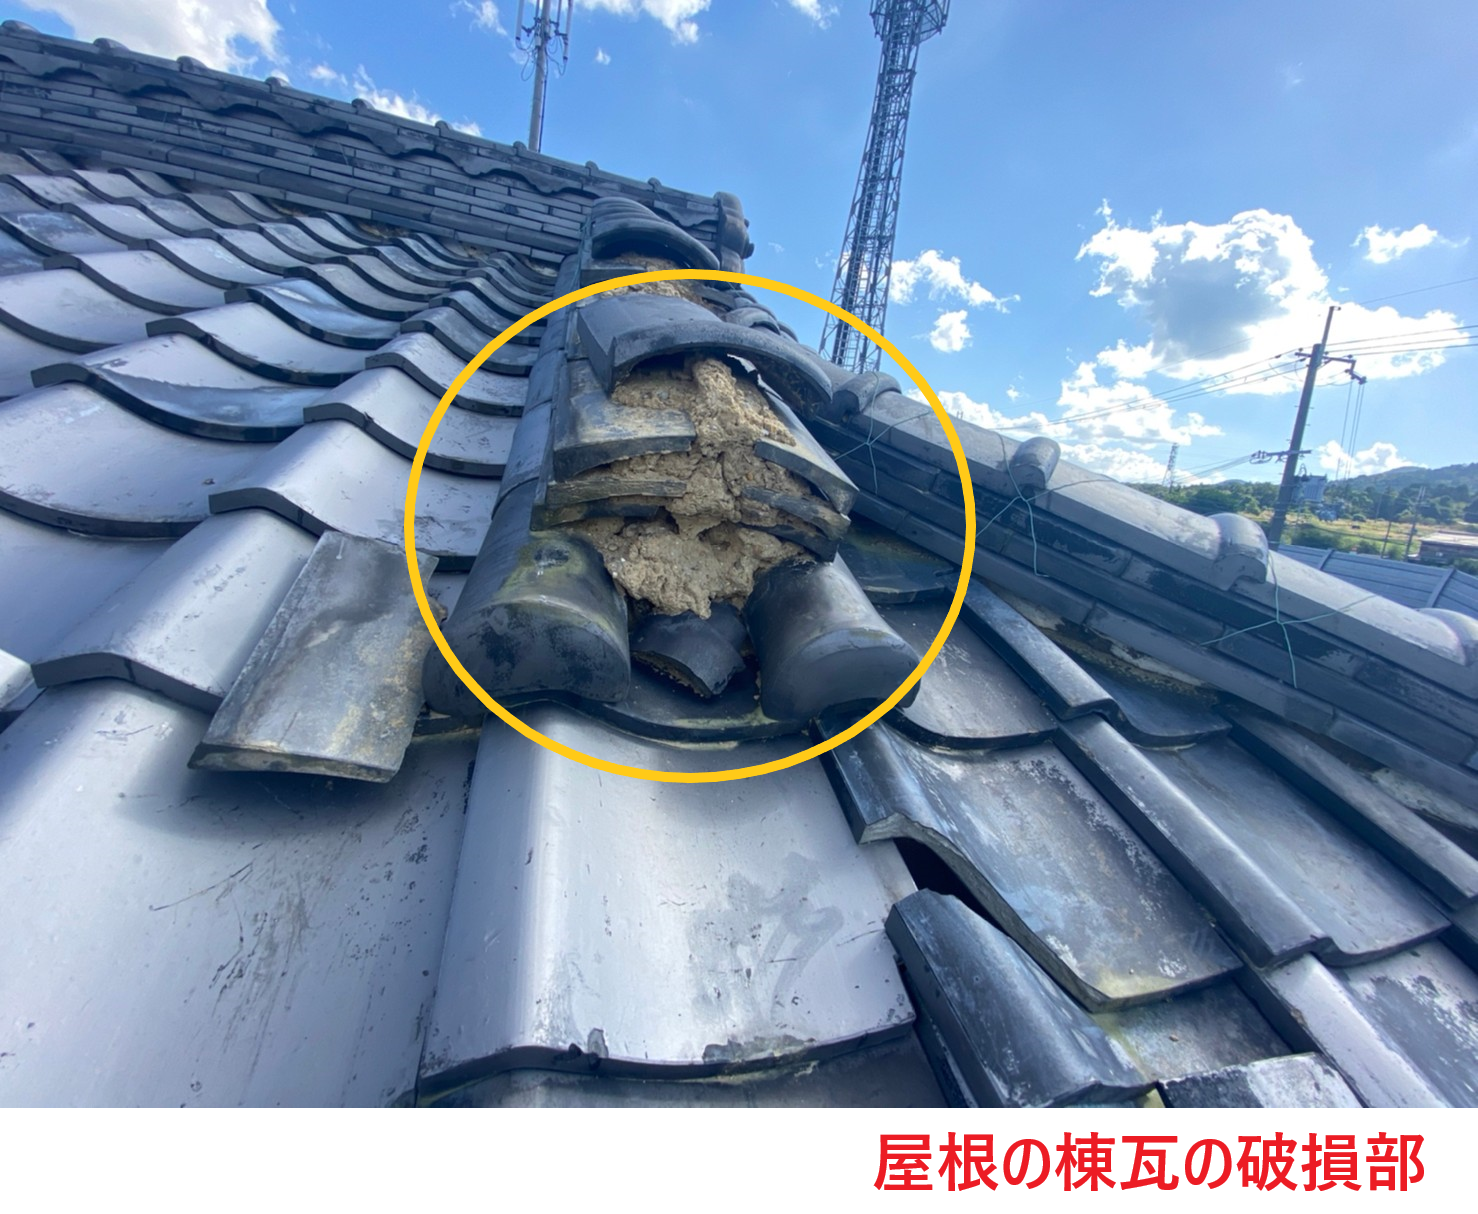 屋根の棟瓦の破損部